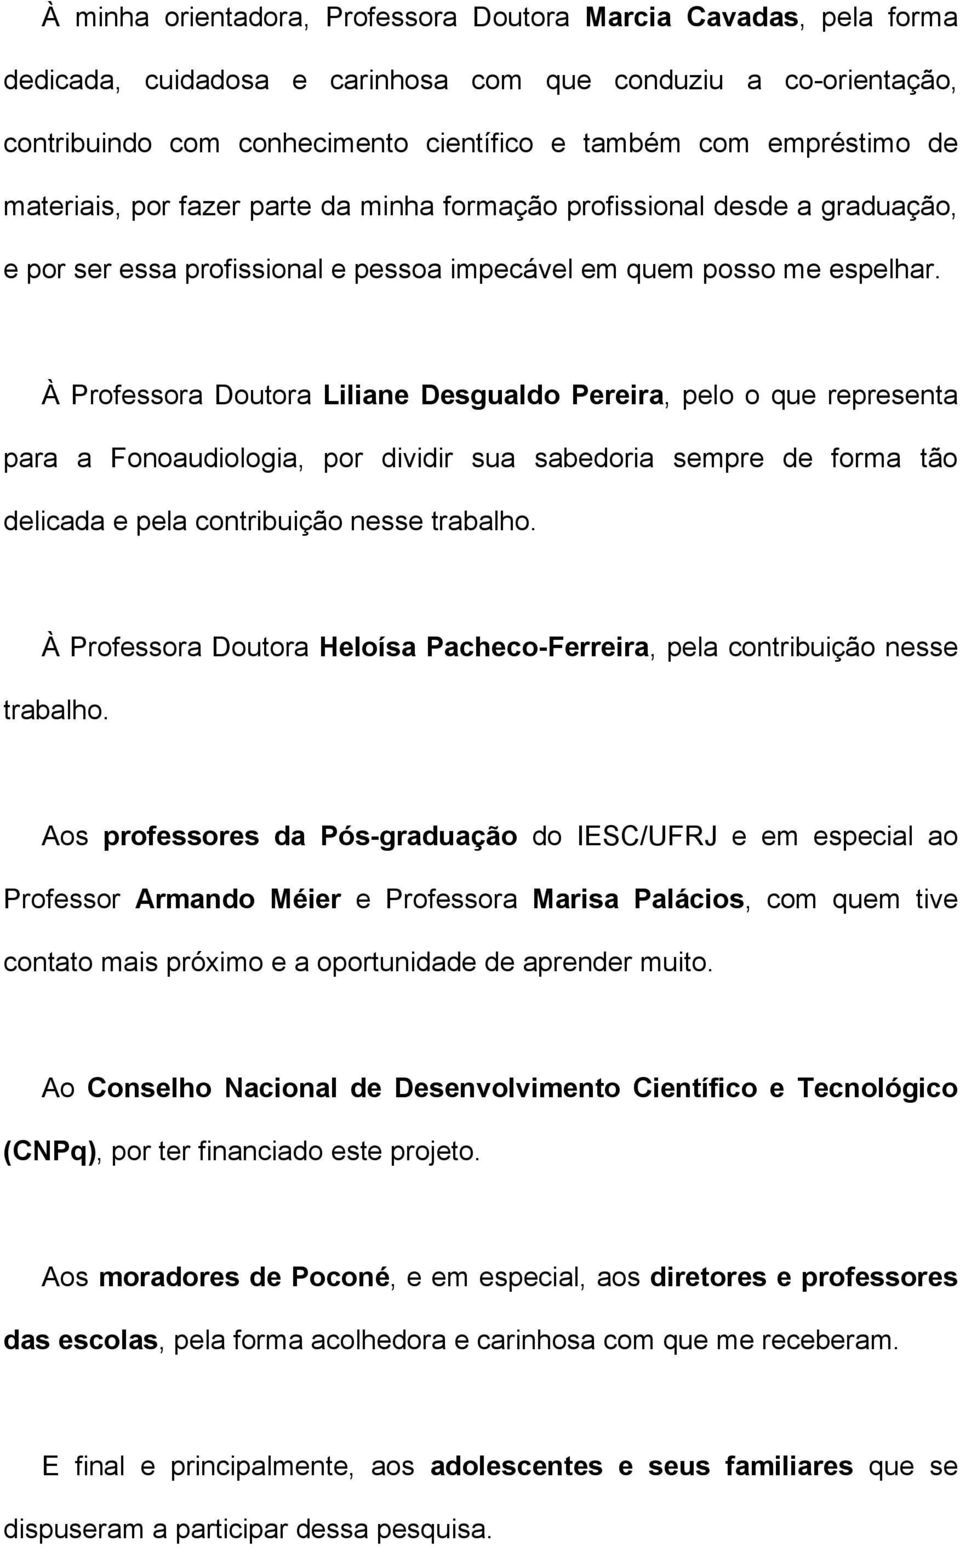 À Professora Doutora Liliane Desgualdo Pereira, pelo o que representa para a Fonoaudiologia, por dividir sua sabedoria sempre de forma tão delicada e pela contribuição nesse trabalho.